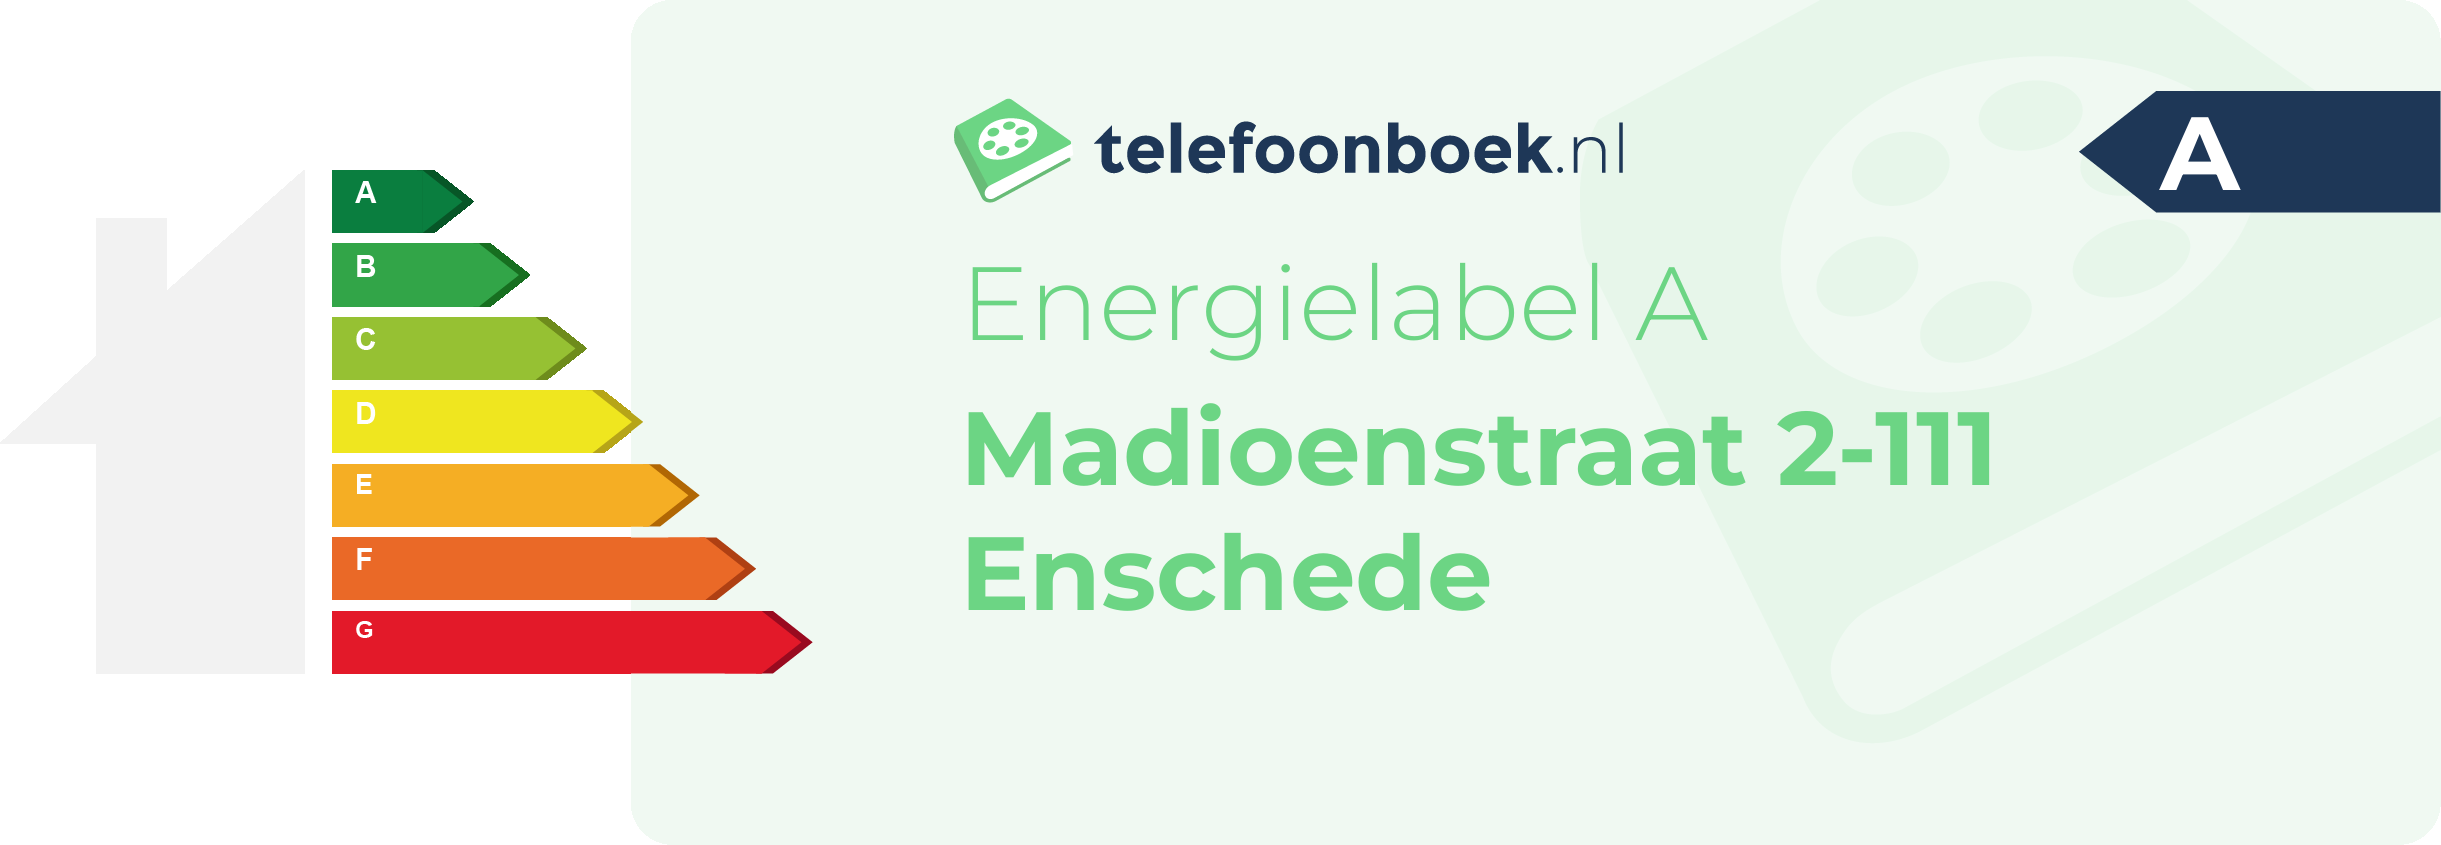 Energielabel Madioenstraat 2-111 Enschede